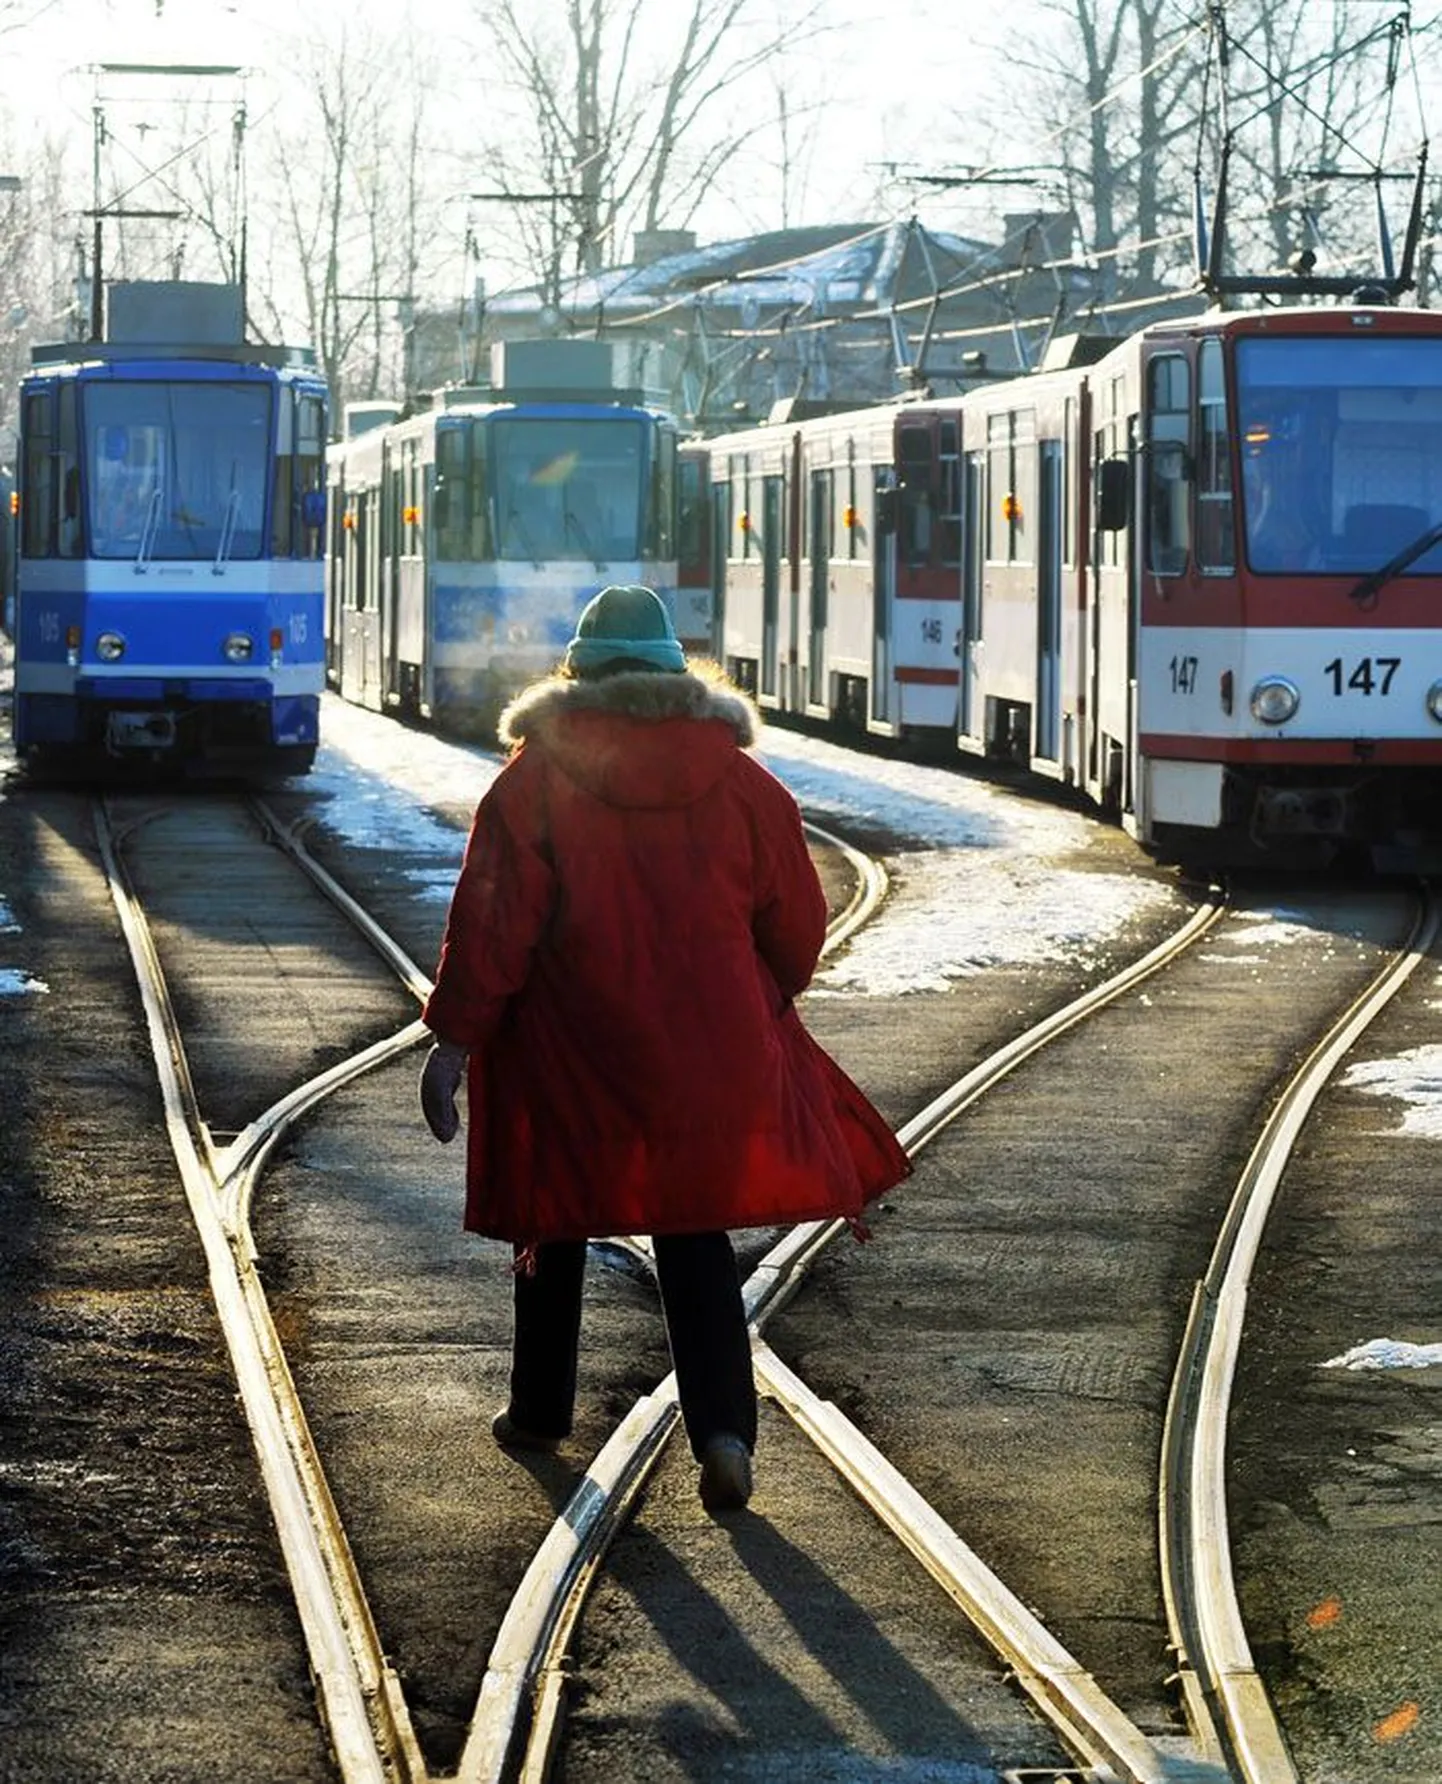 Üks kümme aastat pealinnas trammi juhtinud naisterahvas, kes oma nime ei soostunud ütlema, otsustas siiski trammi neljandale liinile sõitu viia.